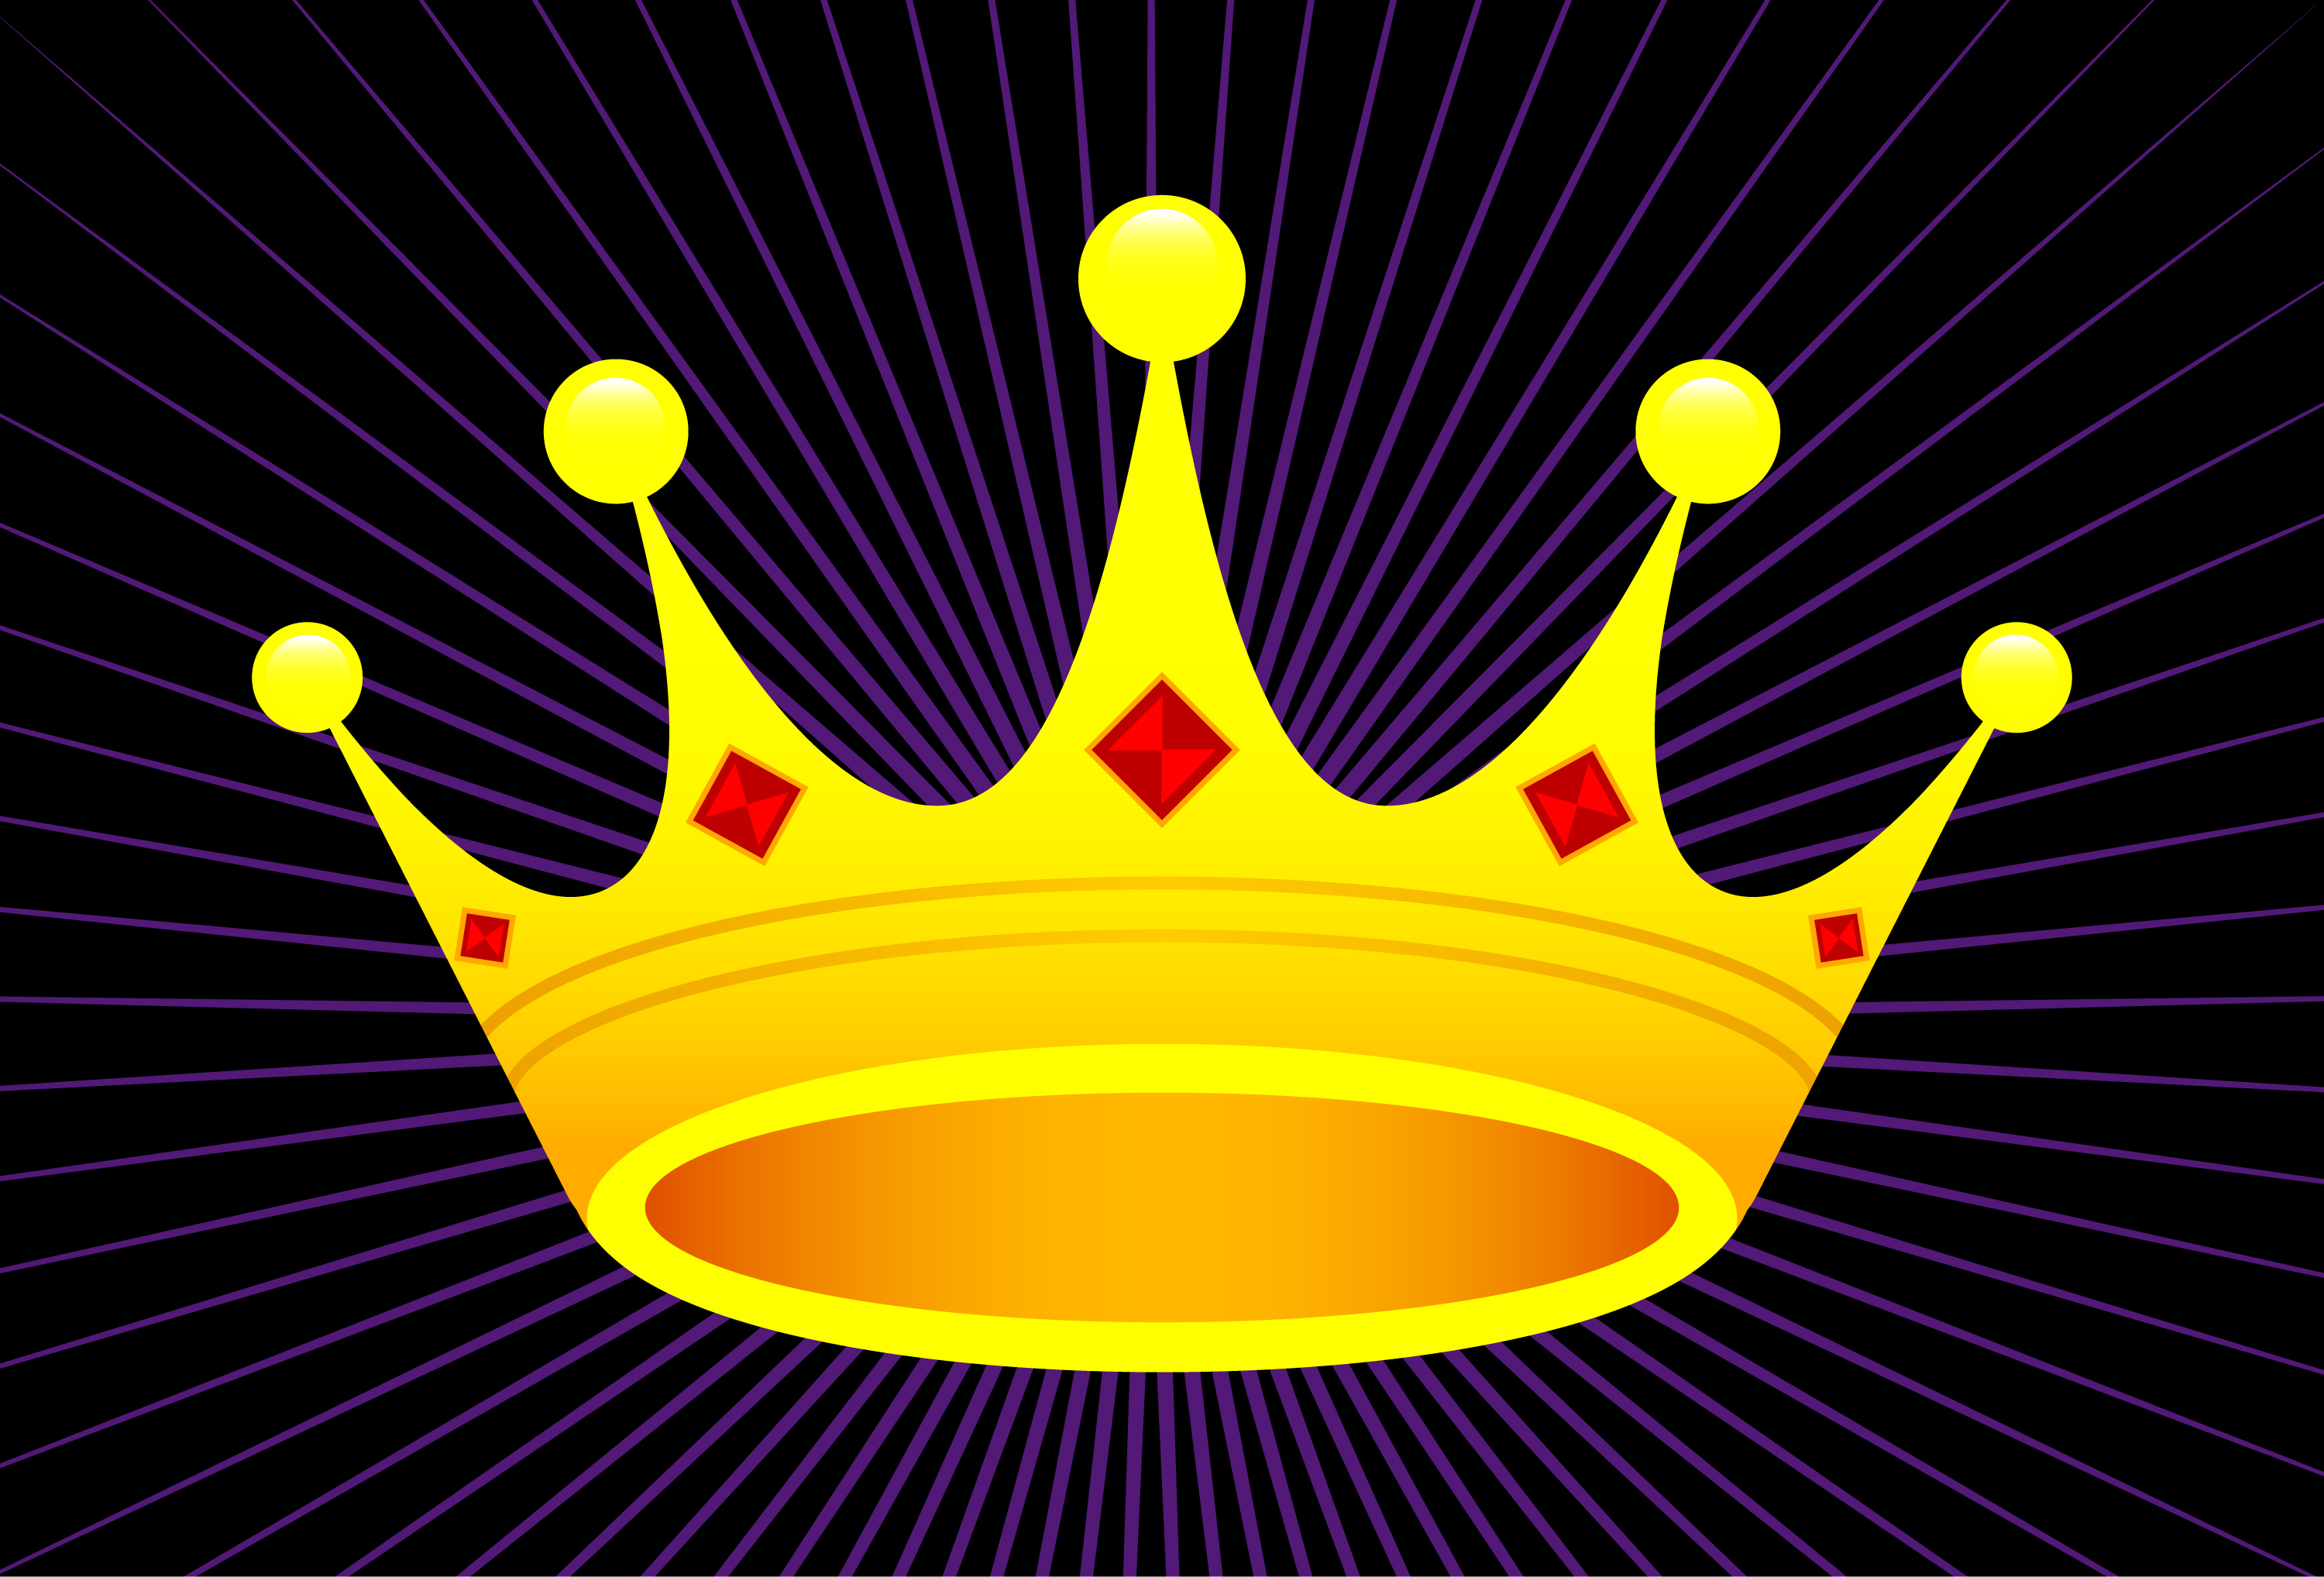 Download Royal crown vector icon 554753 - Download Free Vectors ...